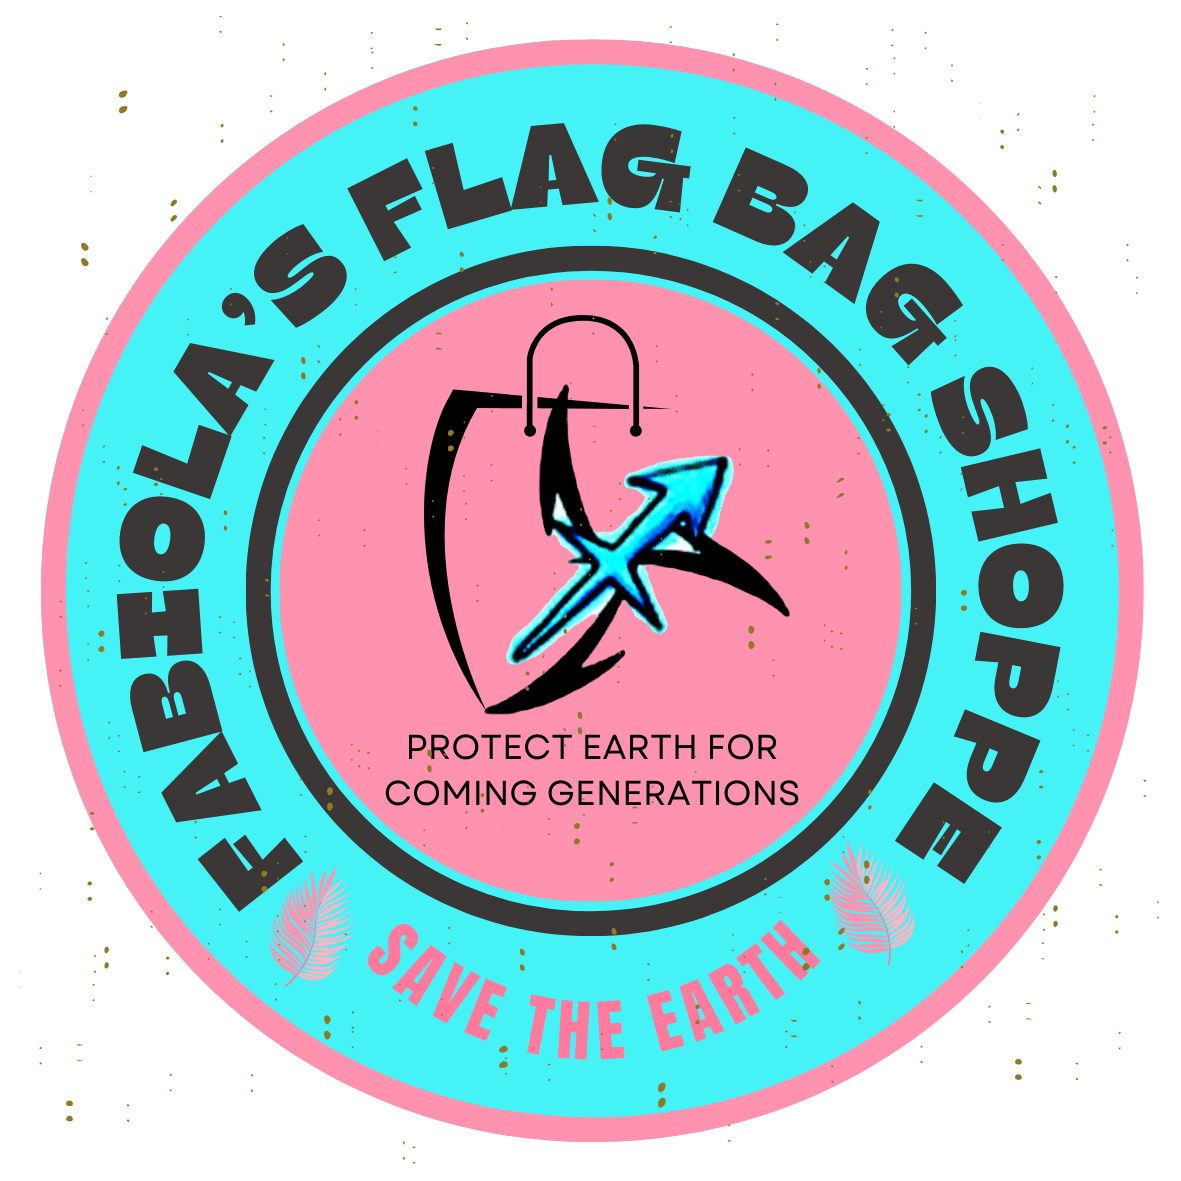 Fabiola’s Flag Bag Shoppe